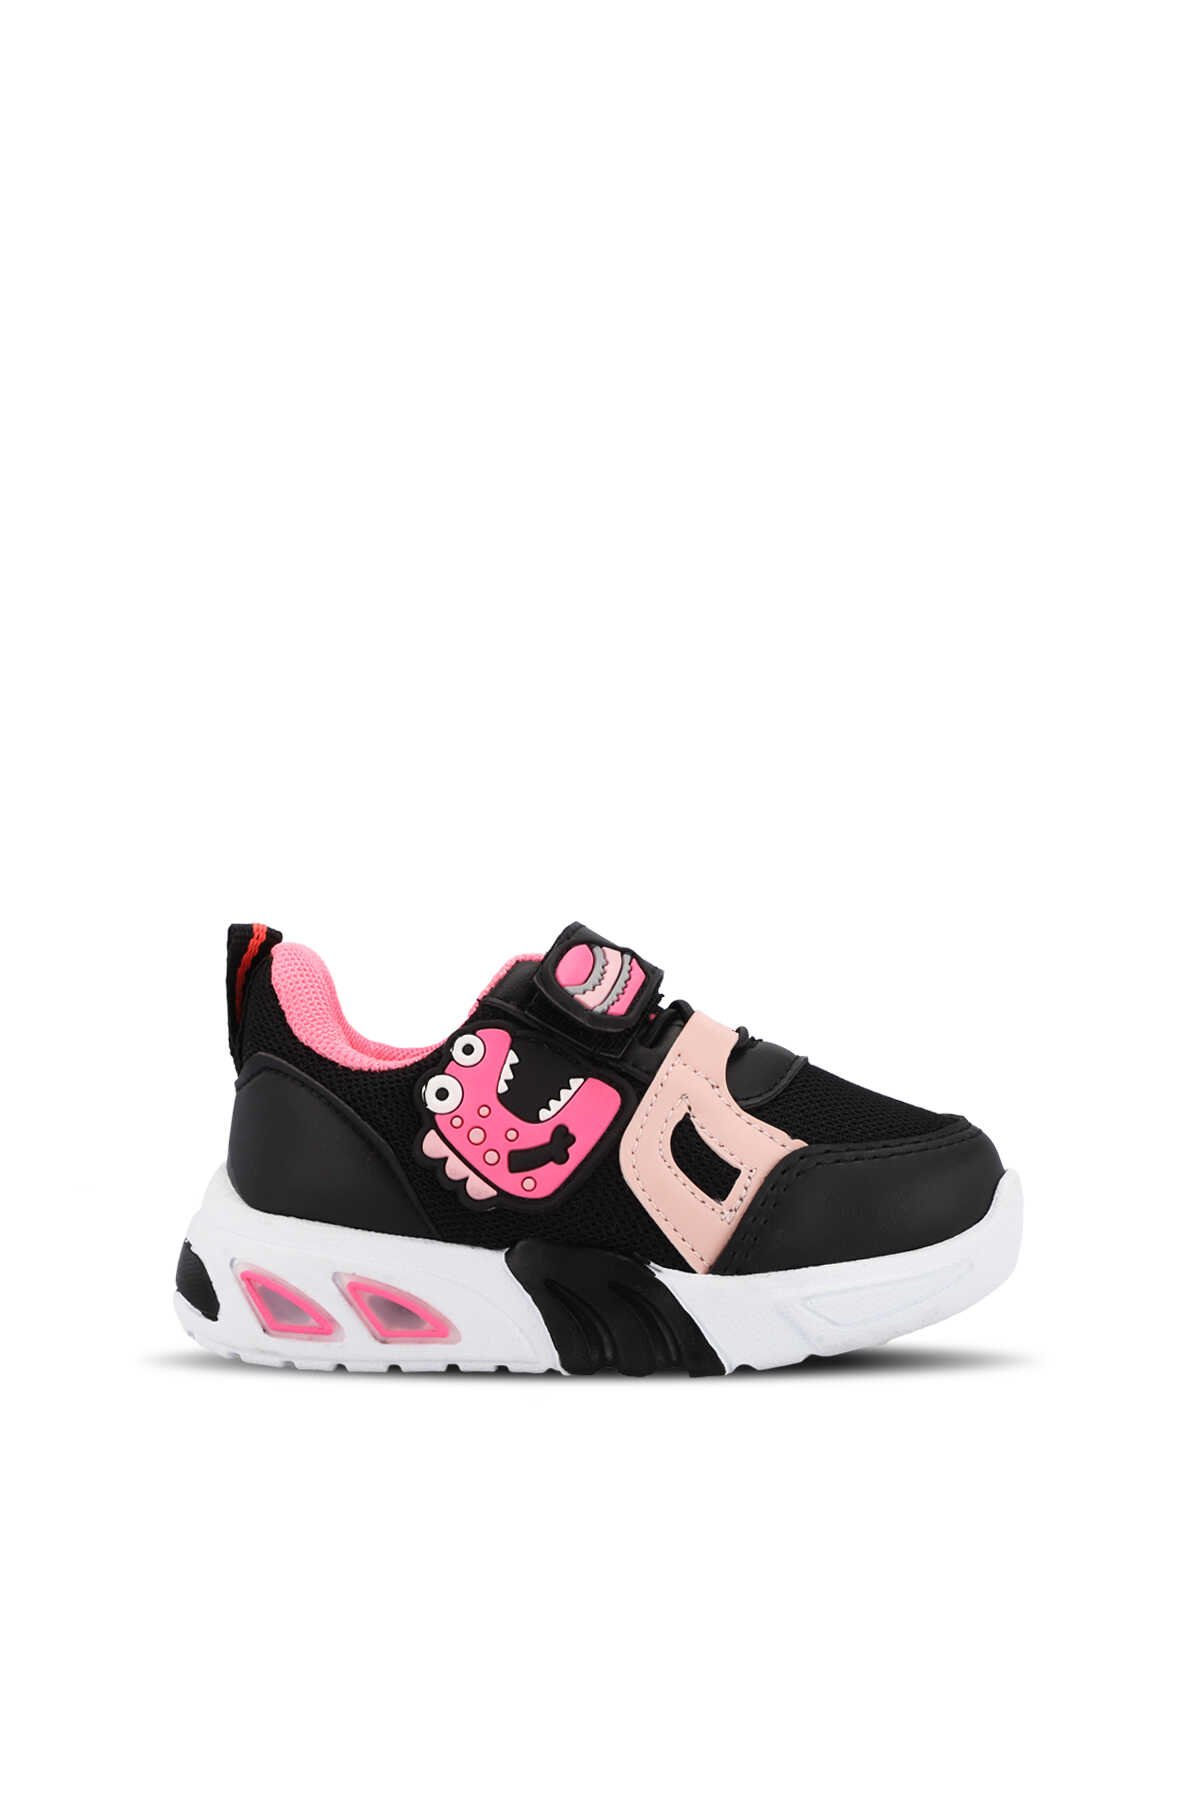 Mille - Mille PANAMA Kız Çocuk Sneaker Ayakkabı Siyah / Fuşya